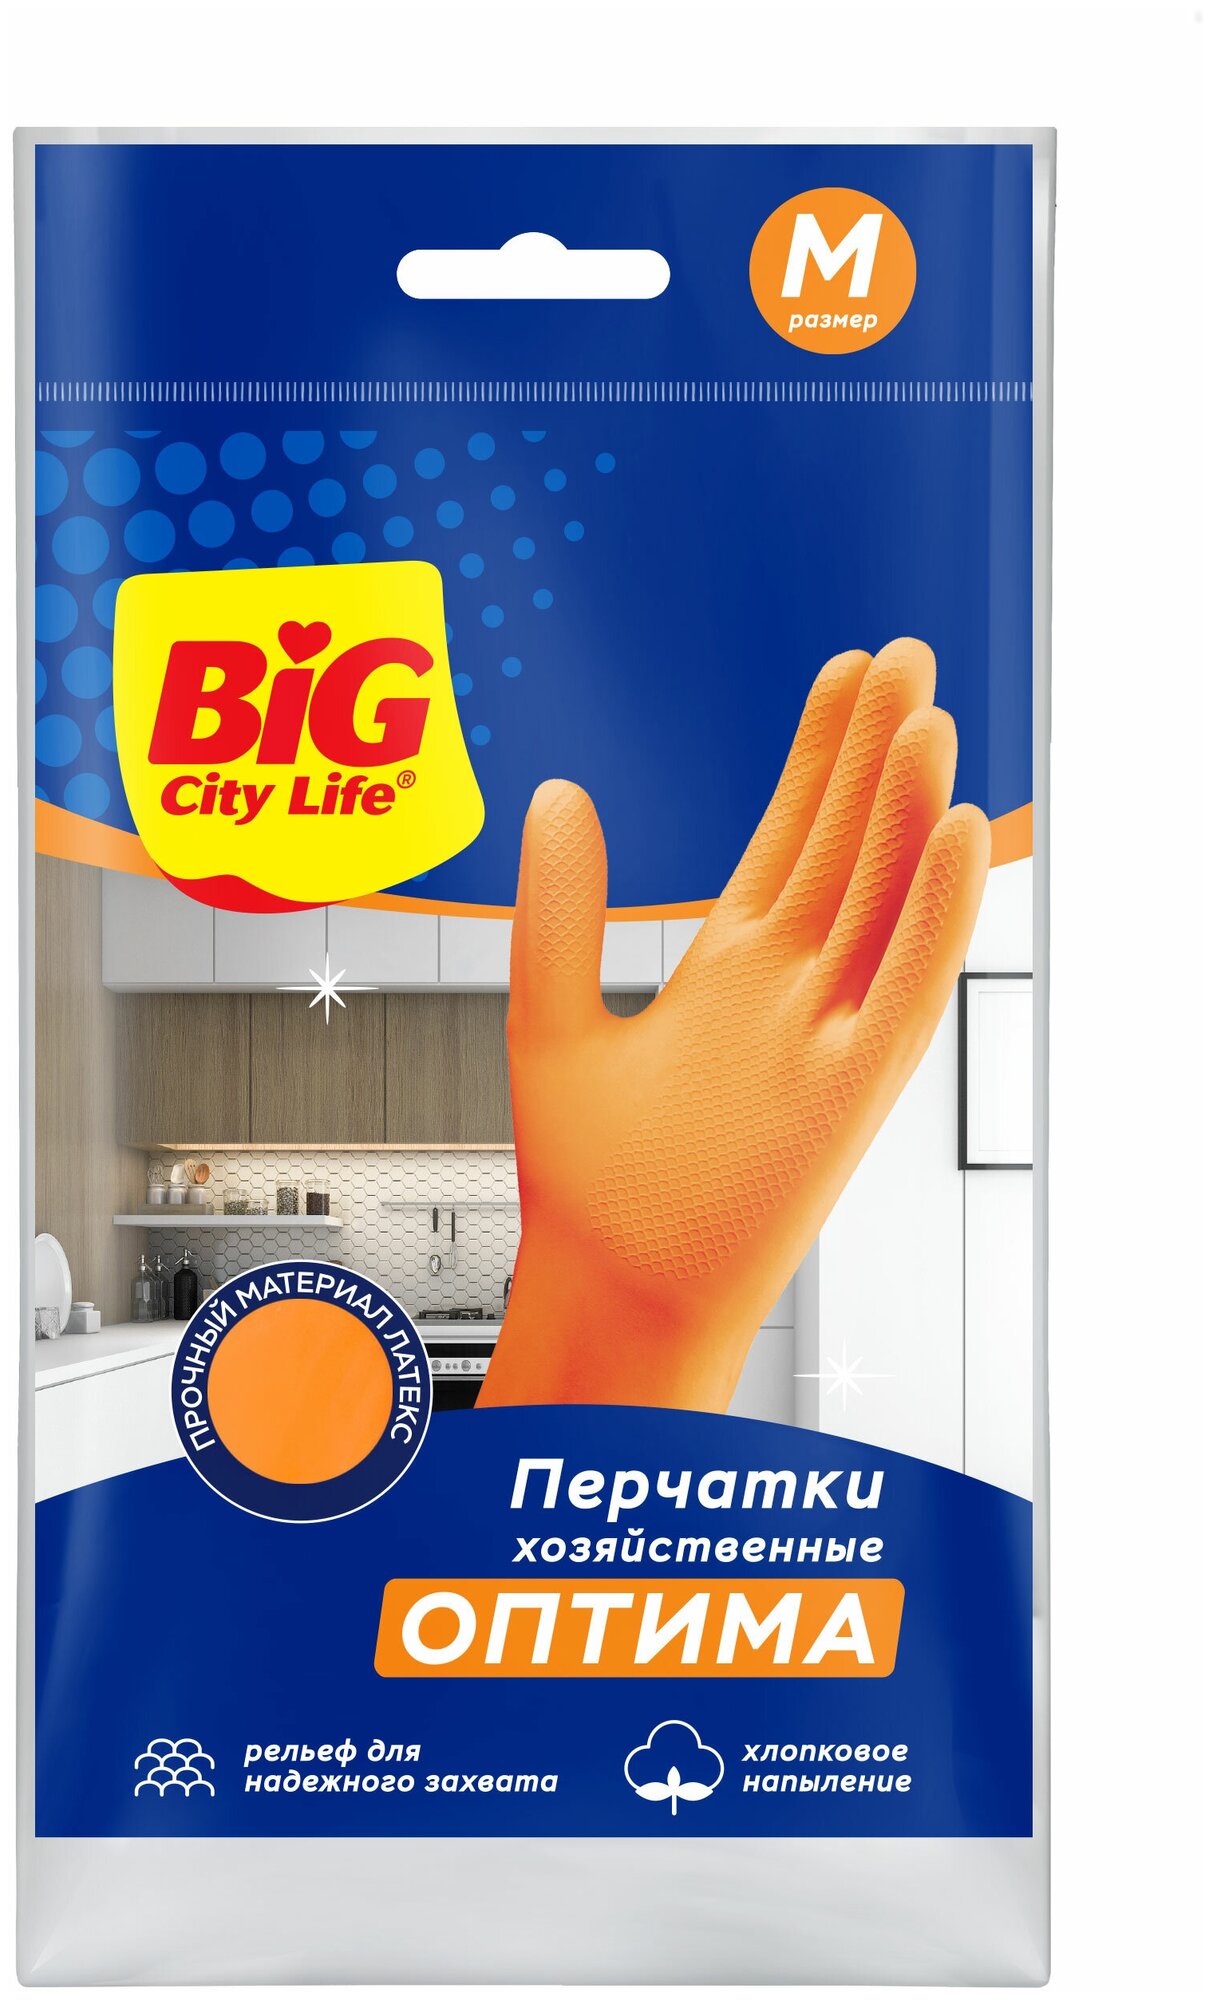 Big City Life Оптима Перчатки хозяйственные латексные с хлопковым напылением Размер M